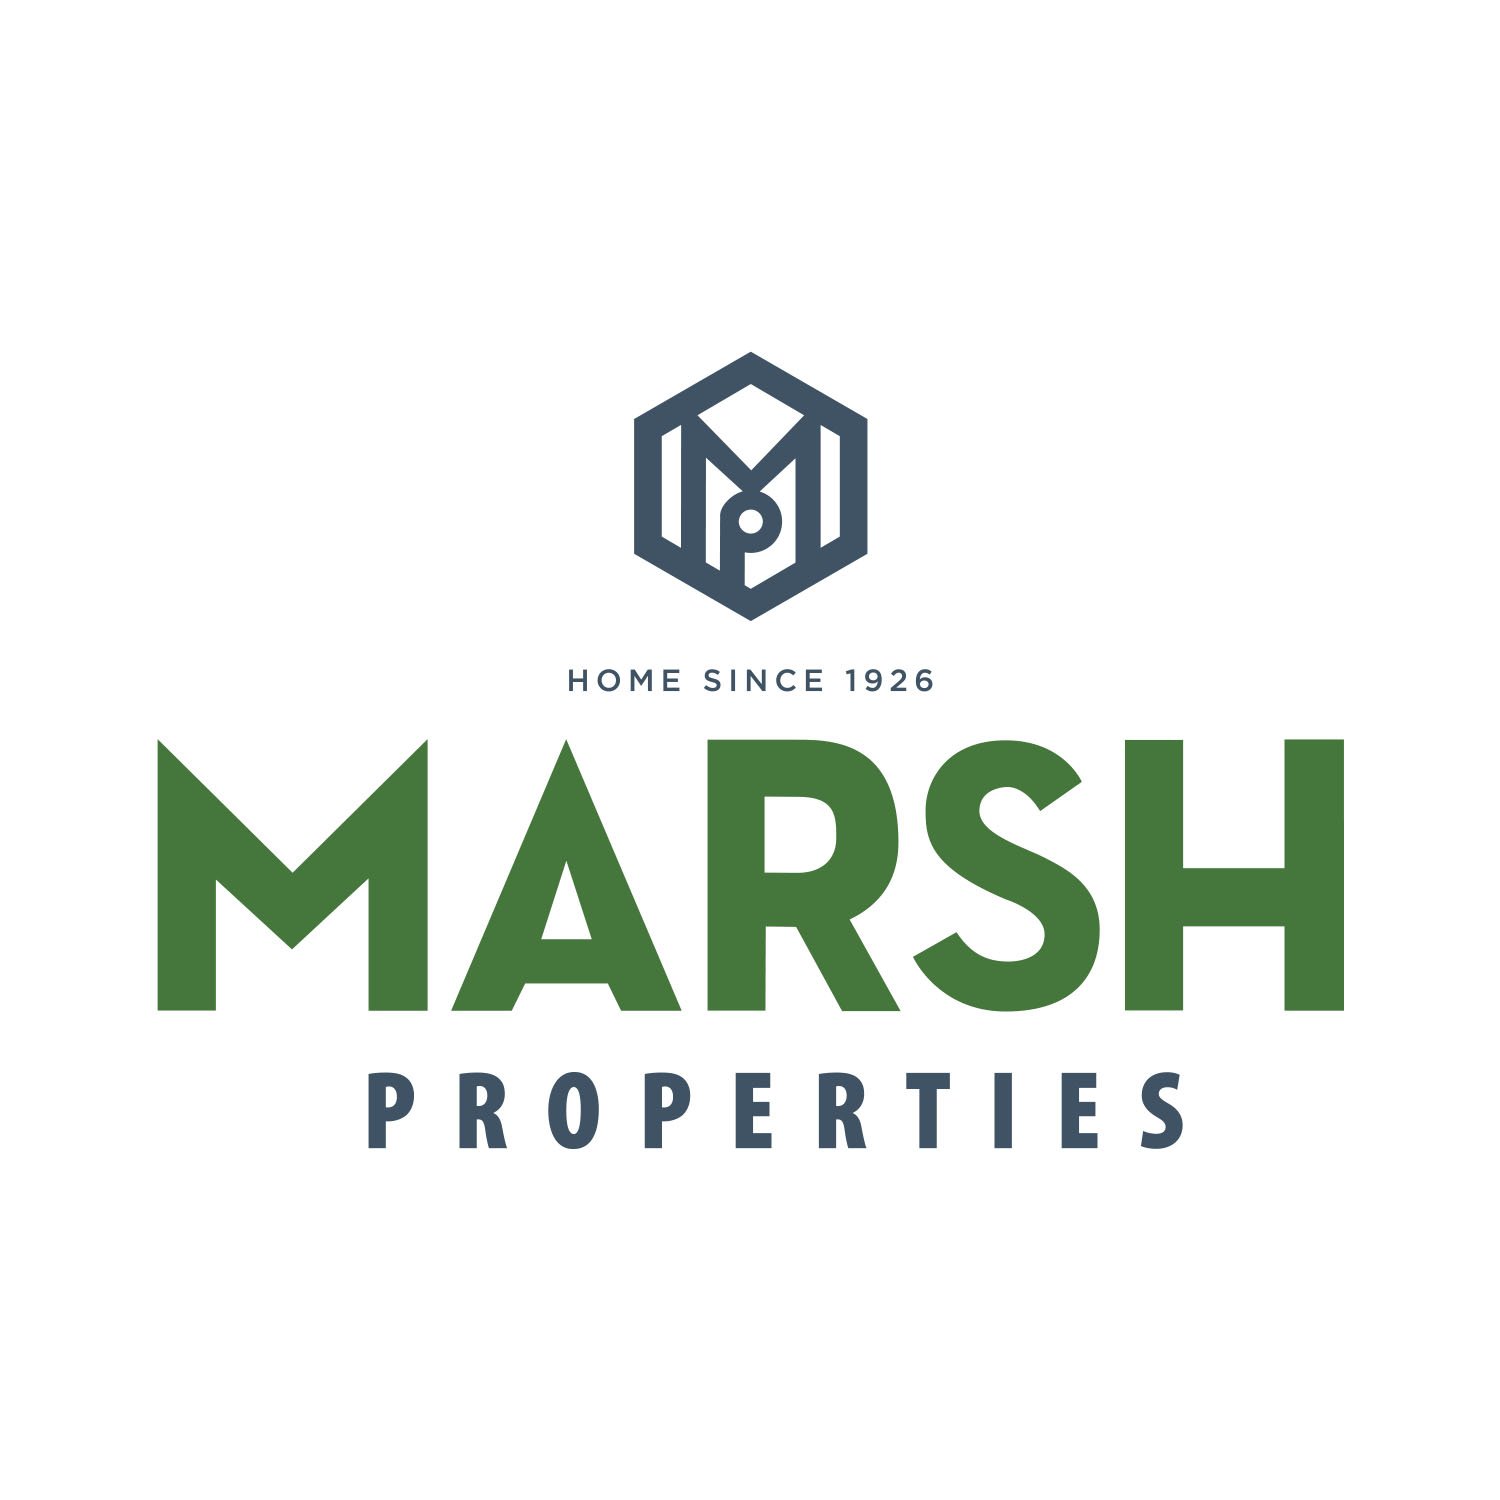 MarshProperties_RGB.jpg